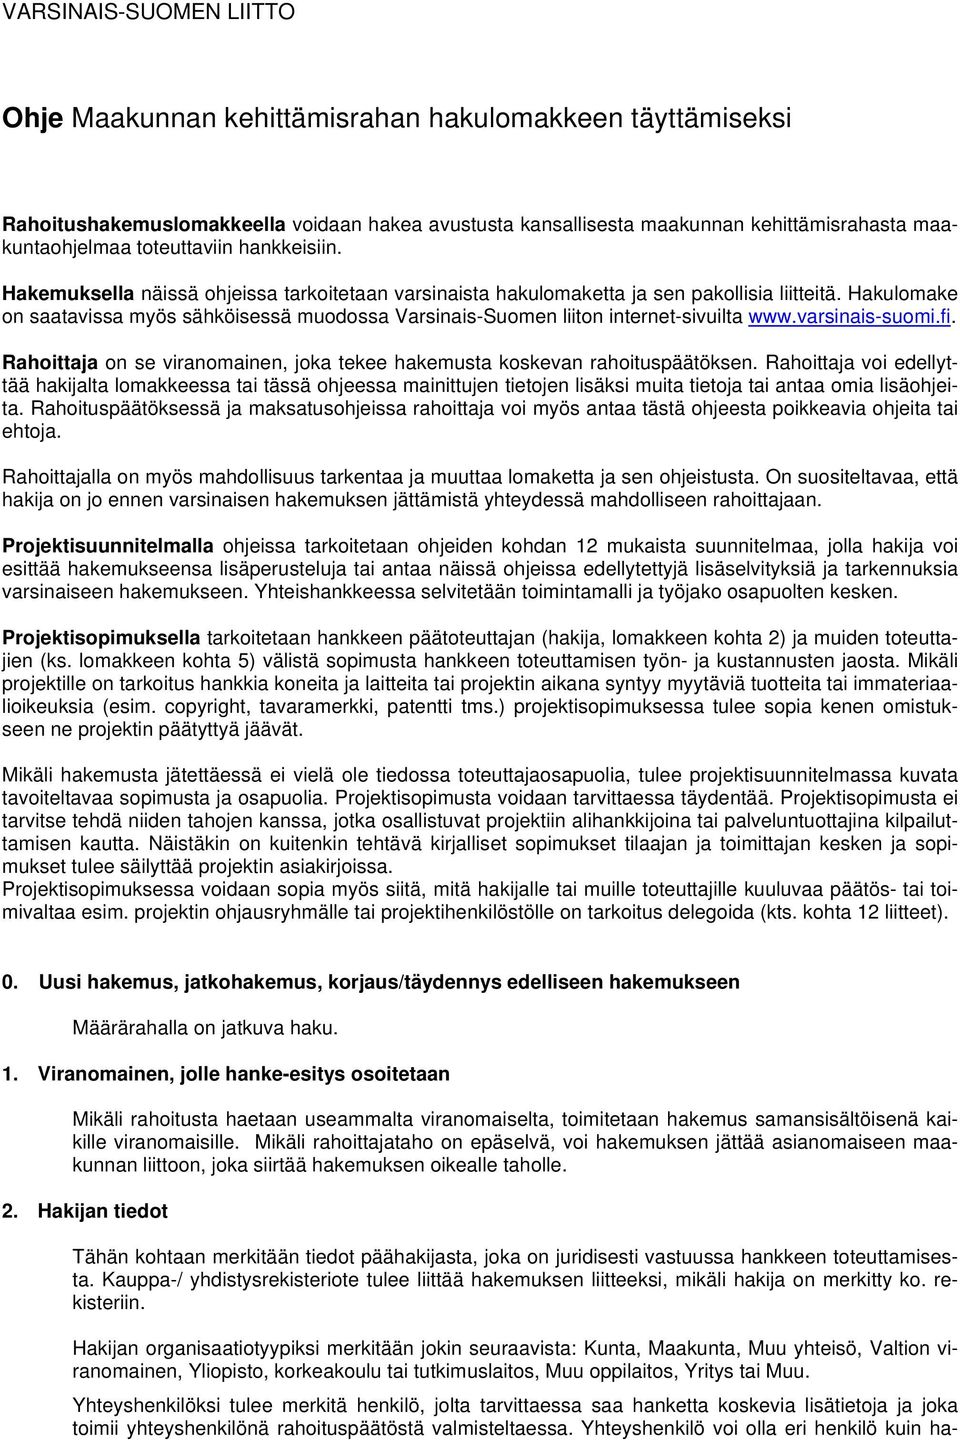 Hakulomake on saatavissa myös sähköisessä muodossa Varsinais-Suomen liiton internet-sivuilta www.varsinais-suomi.fi. Rahoittaja on se viranomainen, joka tekee hakemusta koskevan rahoituspäätöksen.